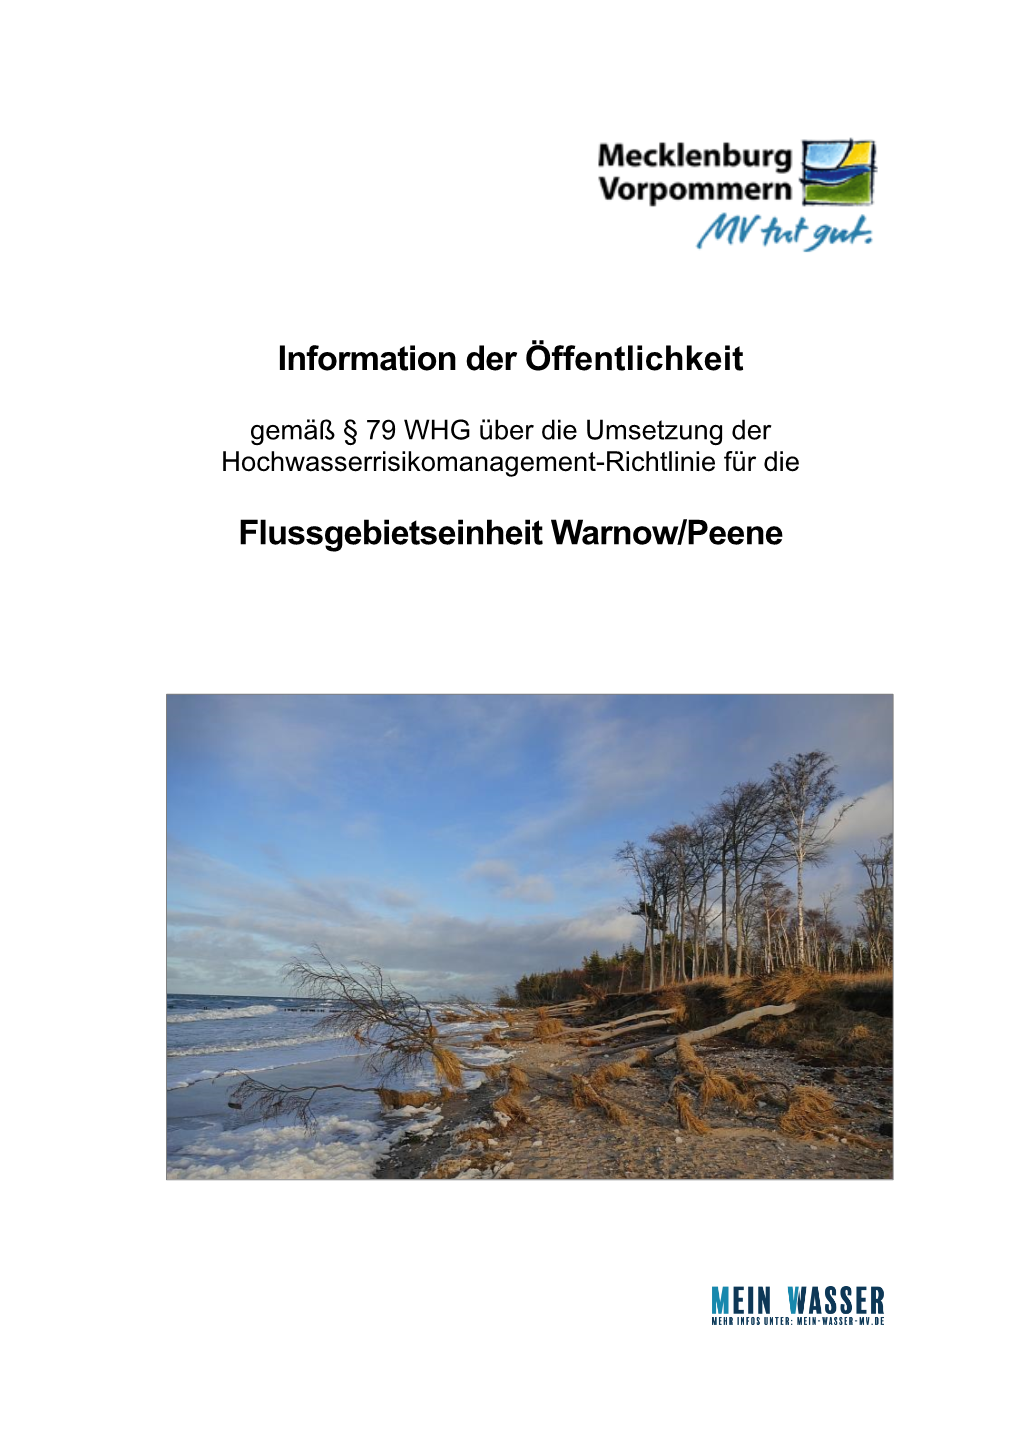 Information Der Öffentlichkeit Flussgebietseinheit Warnow/Peene